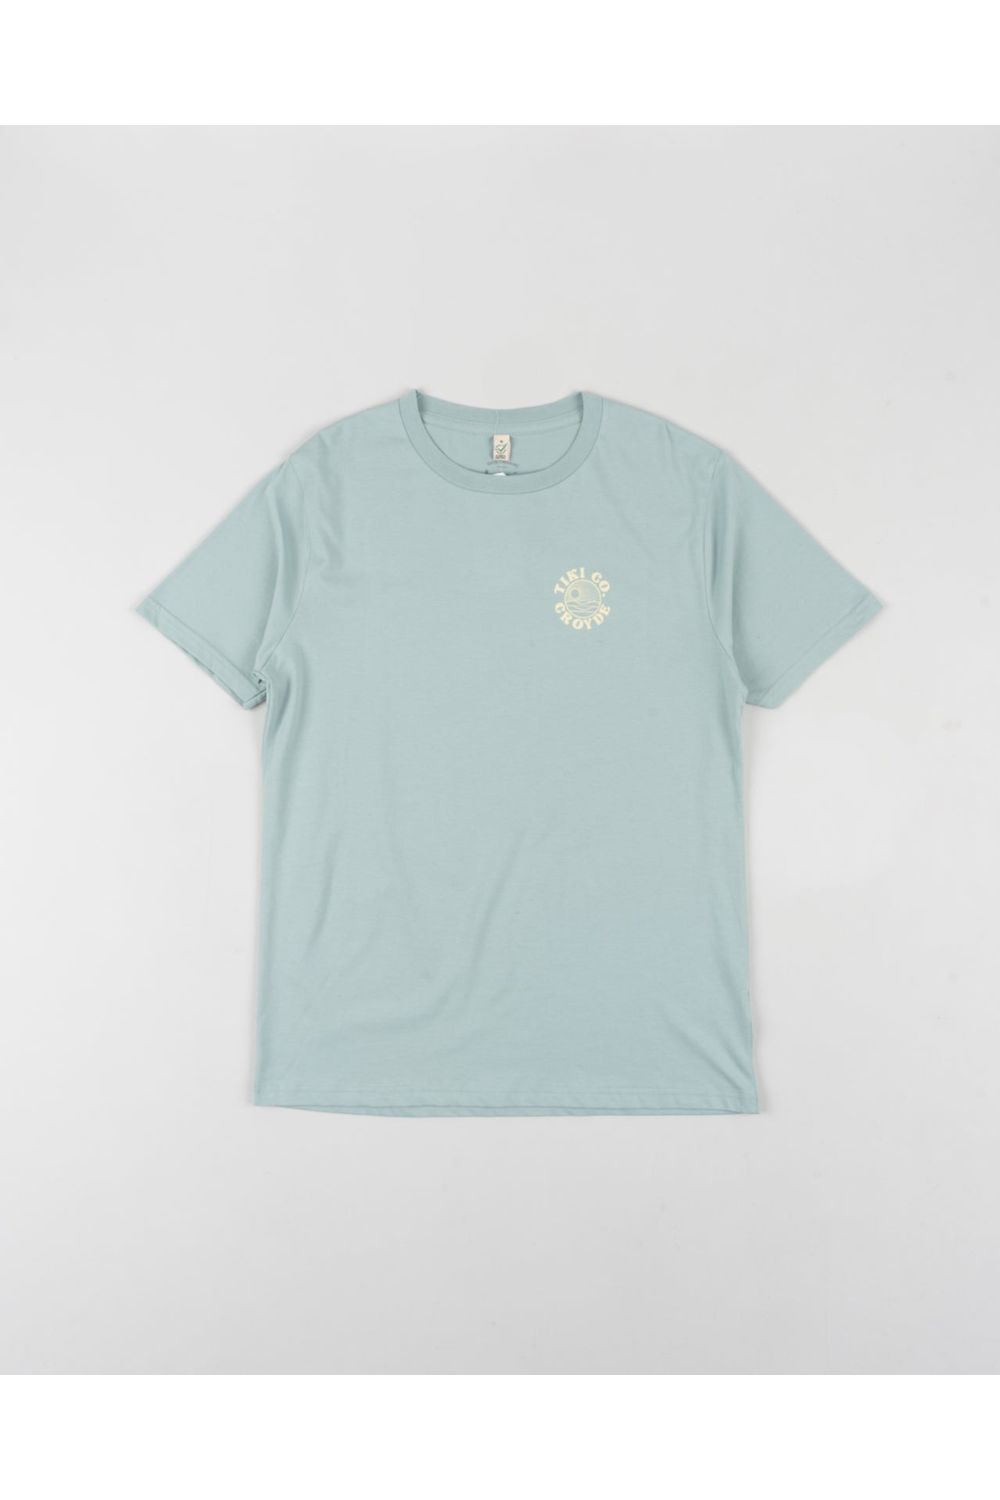 Tiki Croyde T-Shirt - Slate Green